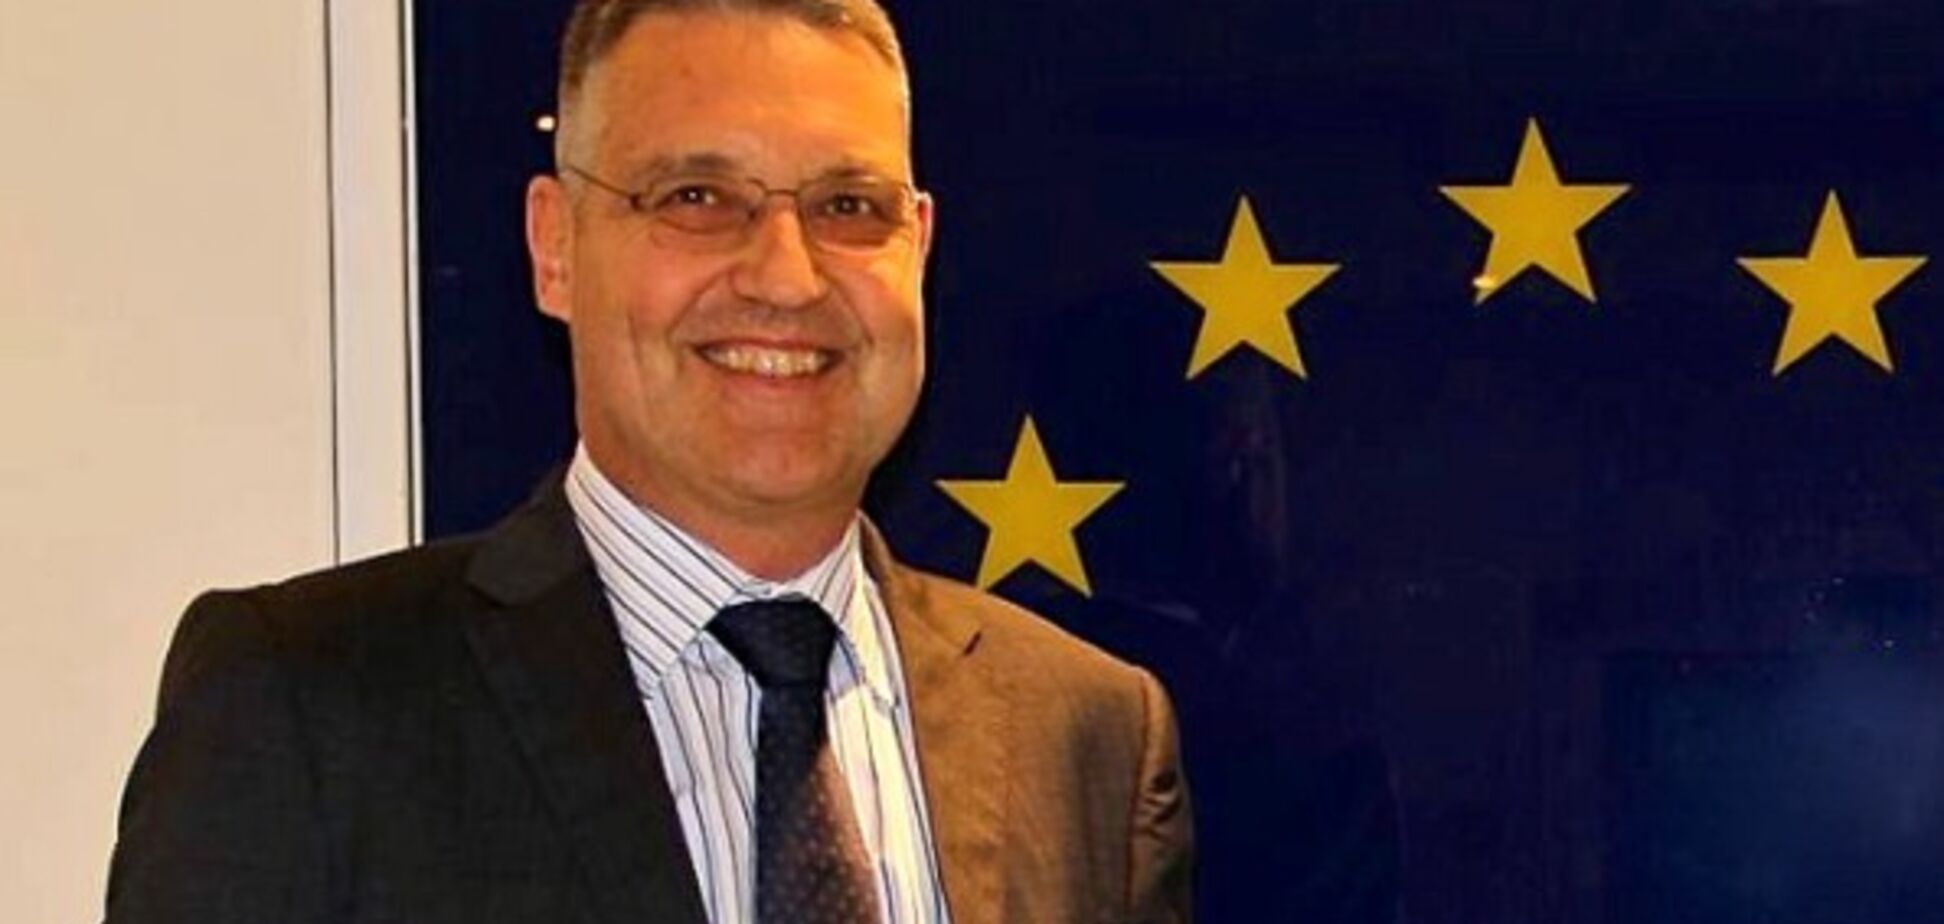 Посол ЕС в России устроил демарш из-за Украины